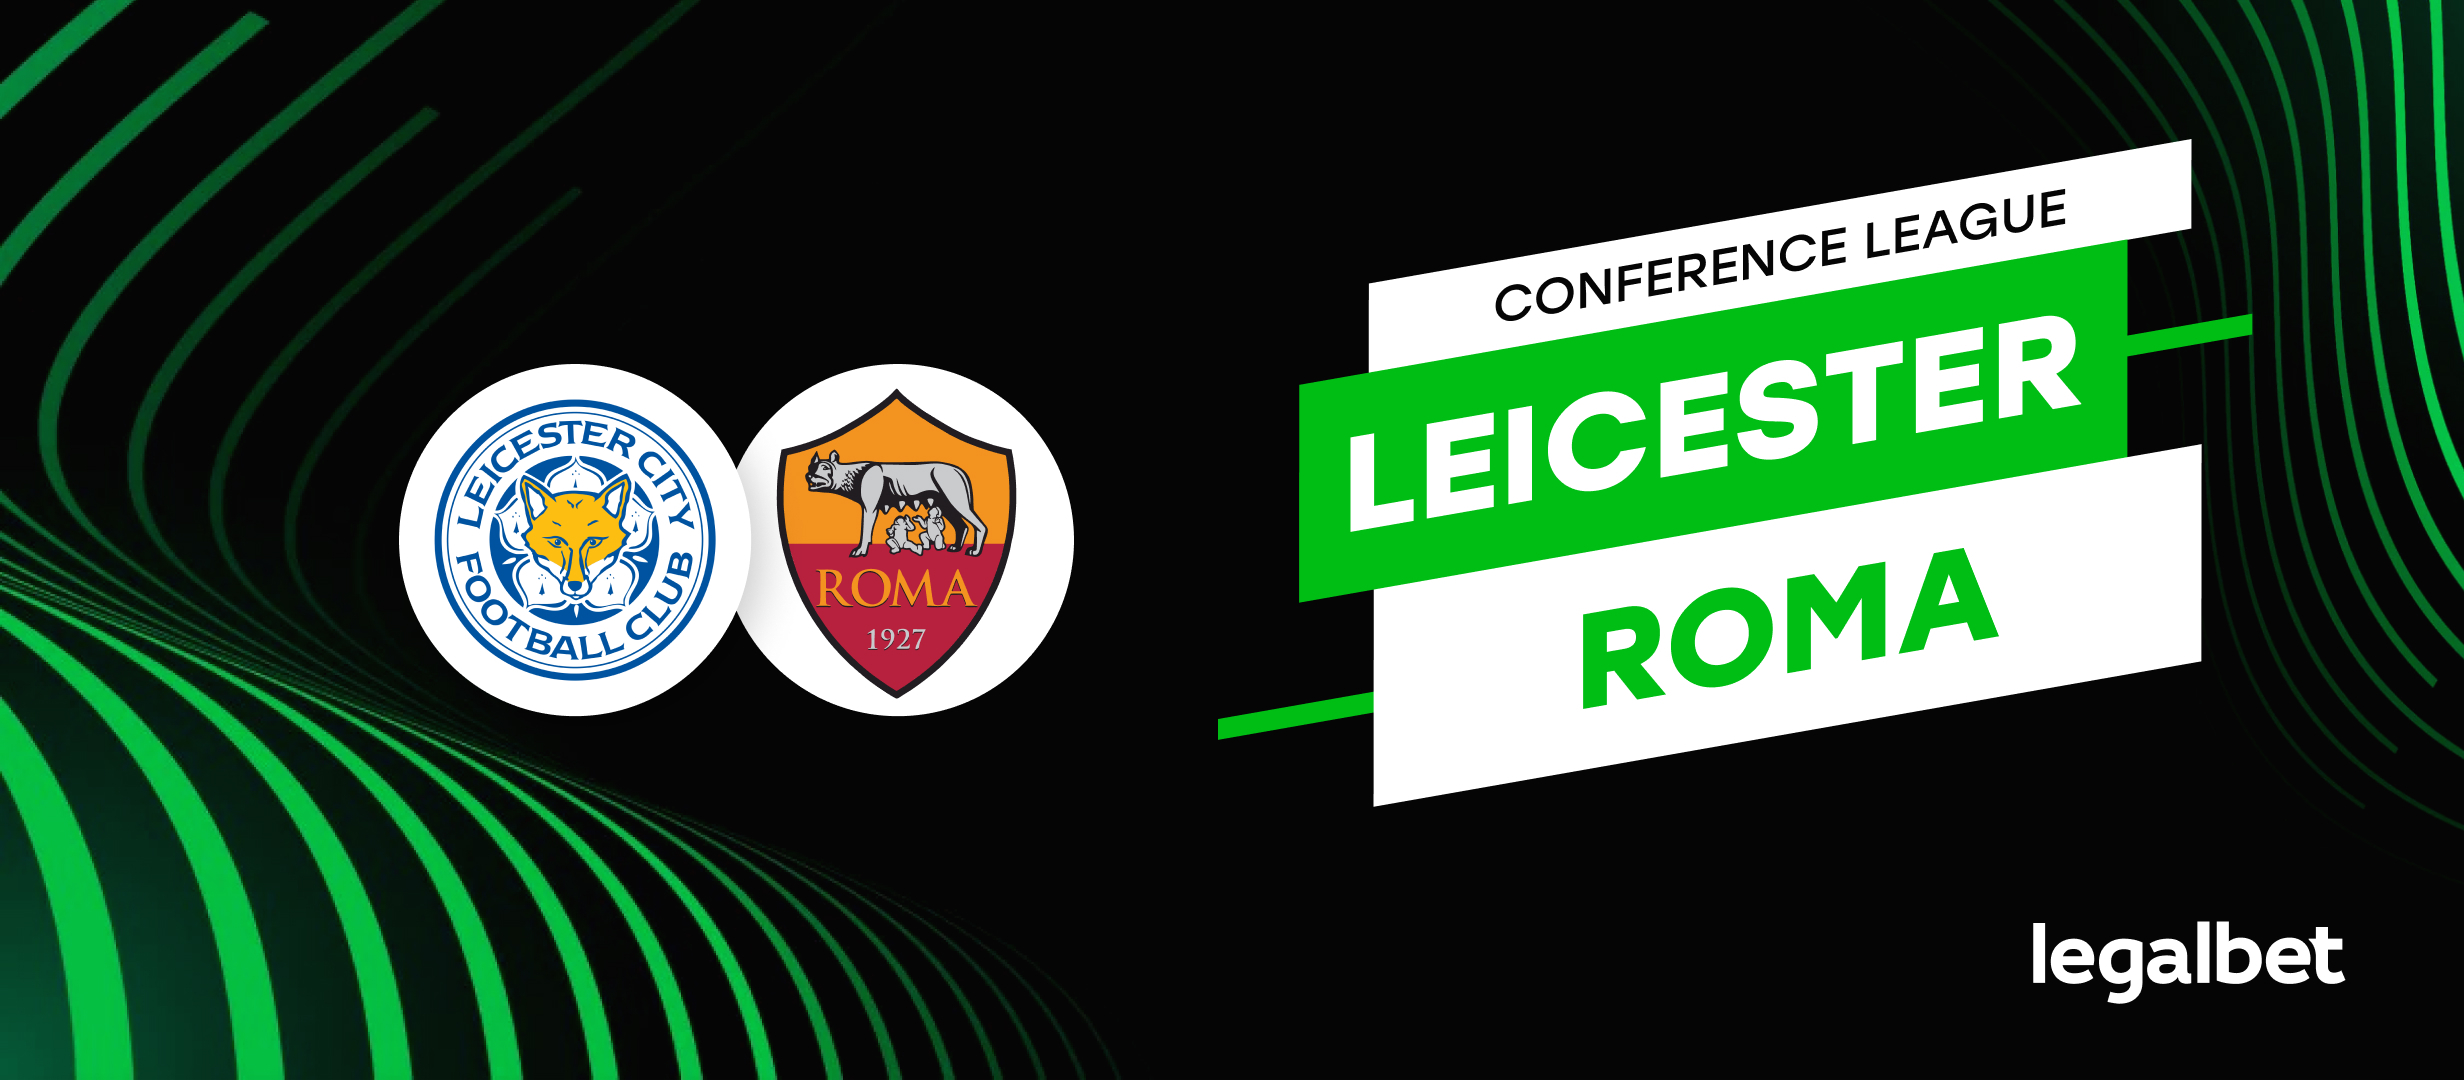 Apuestas y cuotas - Leicester vs. Roma - Conference League 2021/22